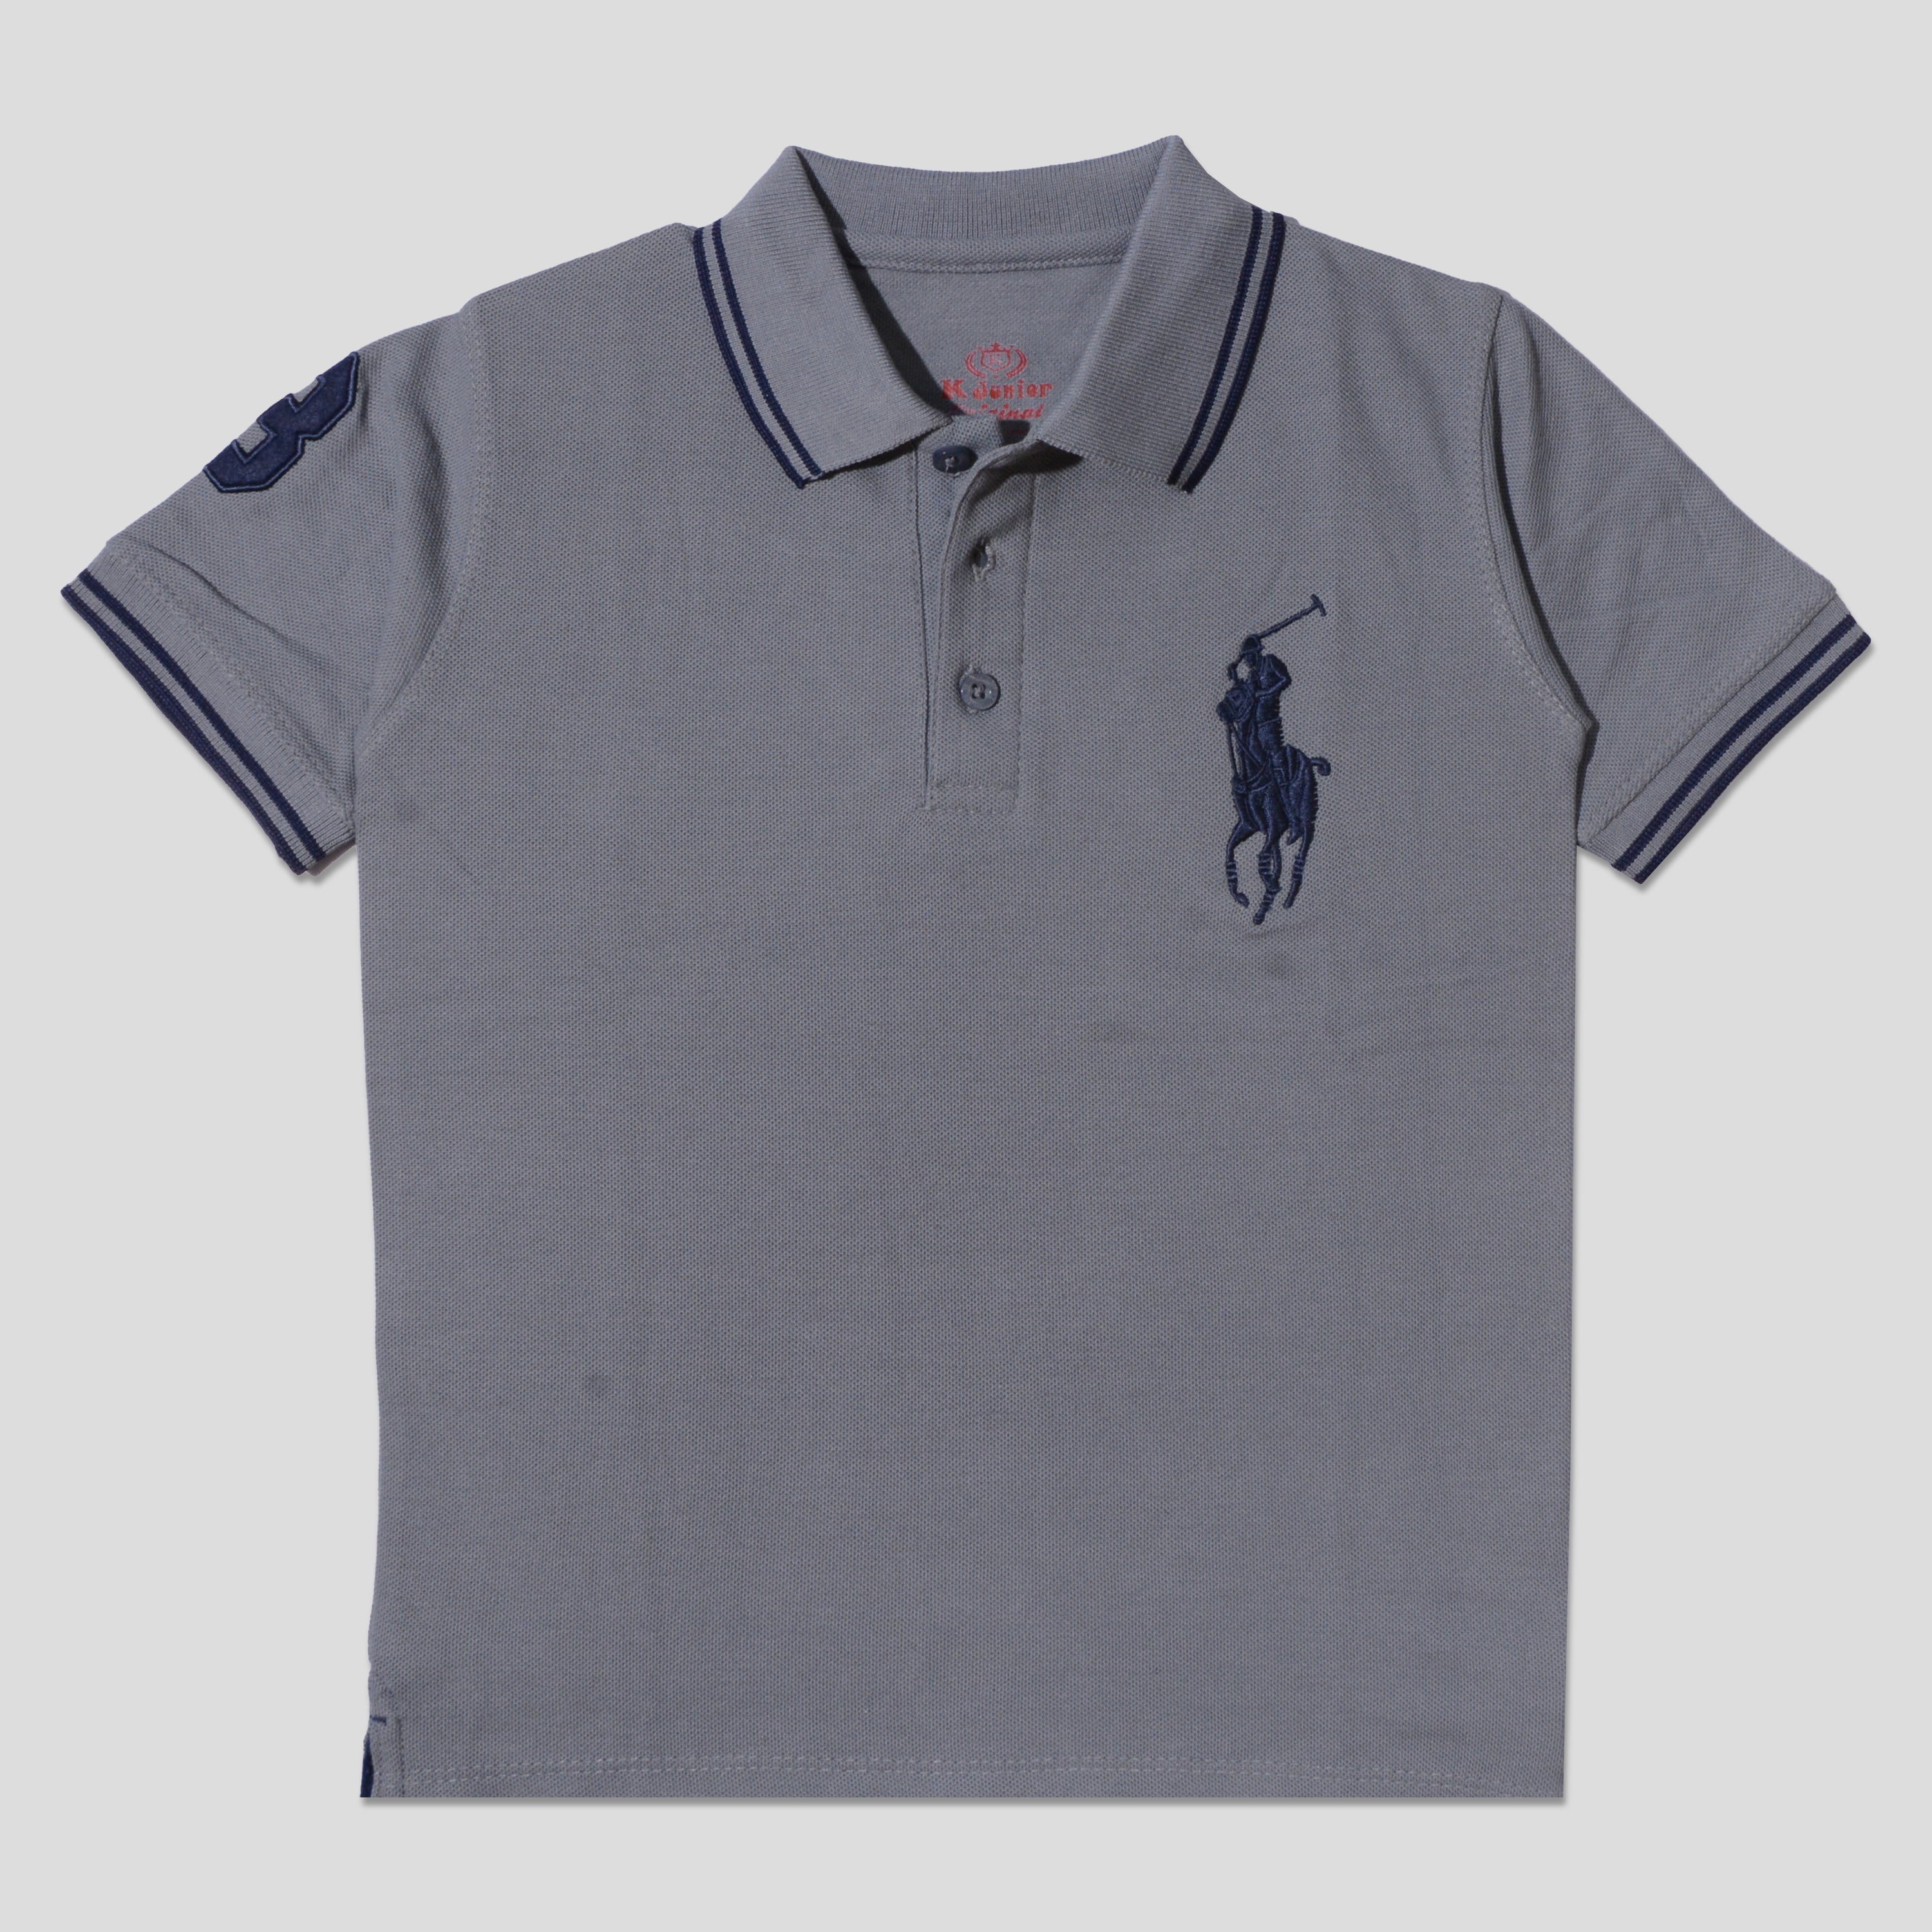 Boys Half Sleeves Polo T-Shirt (Big-Polo)